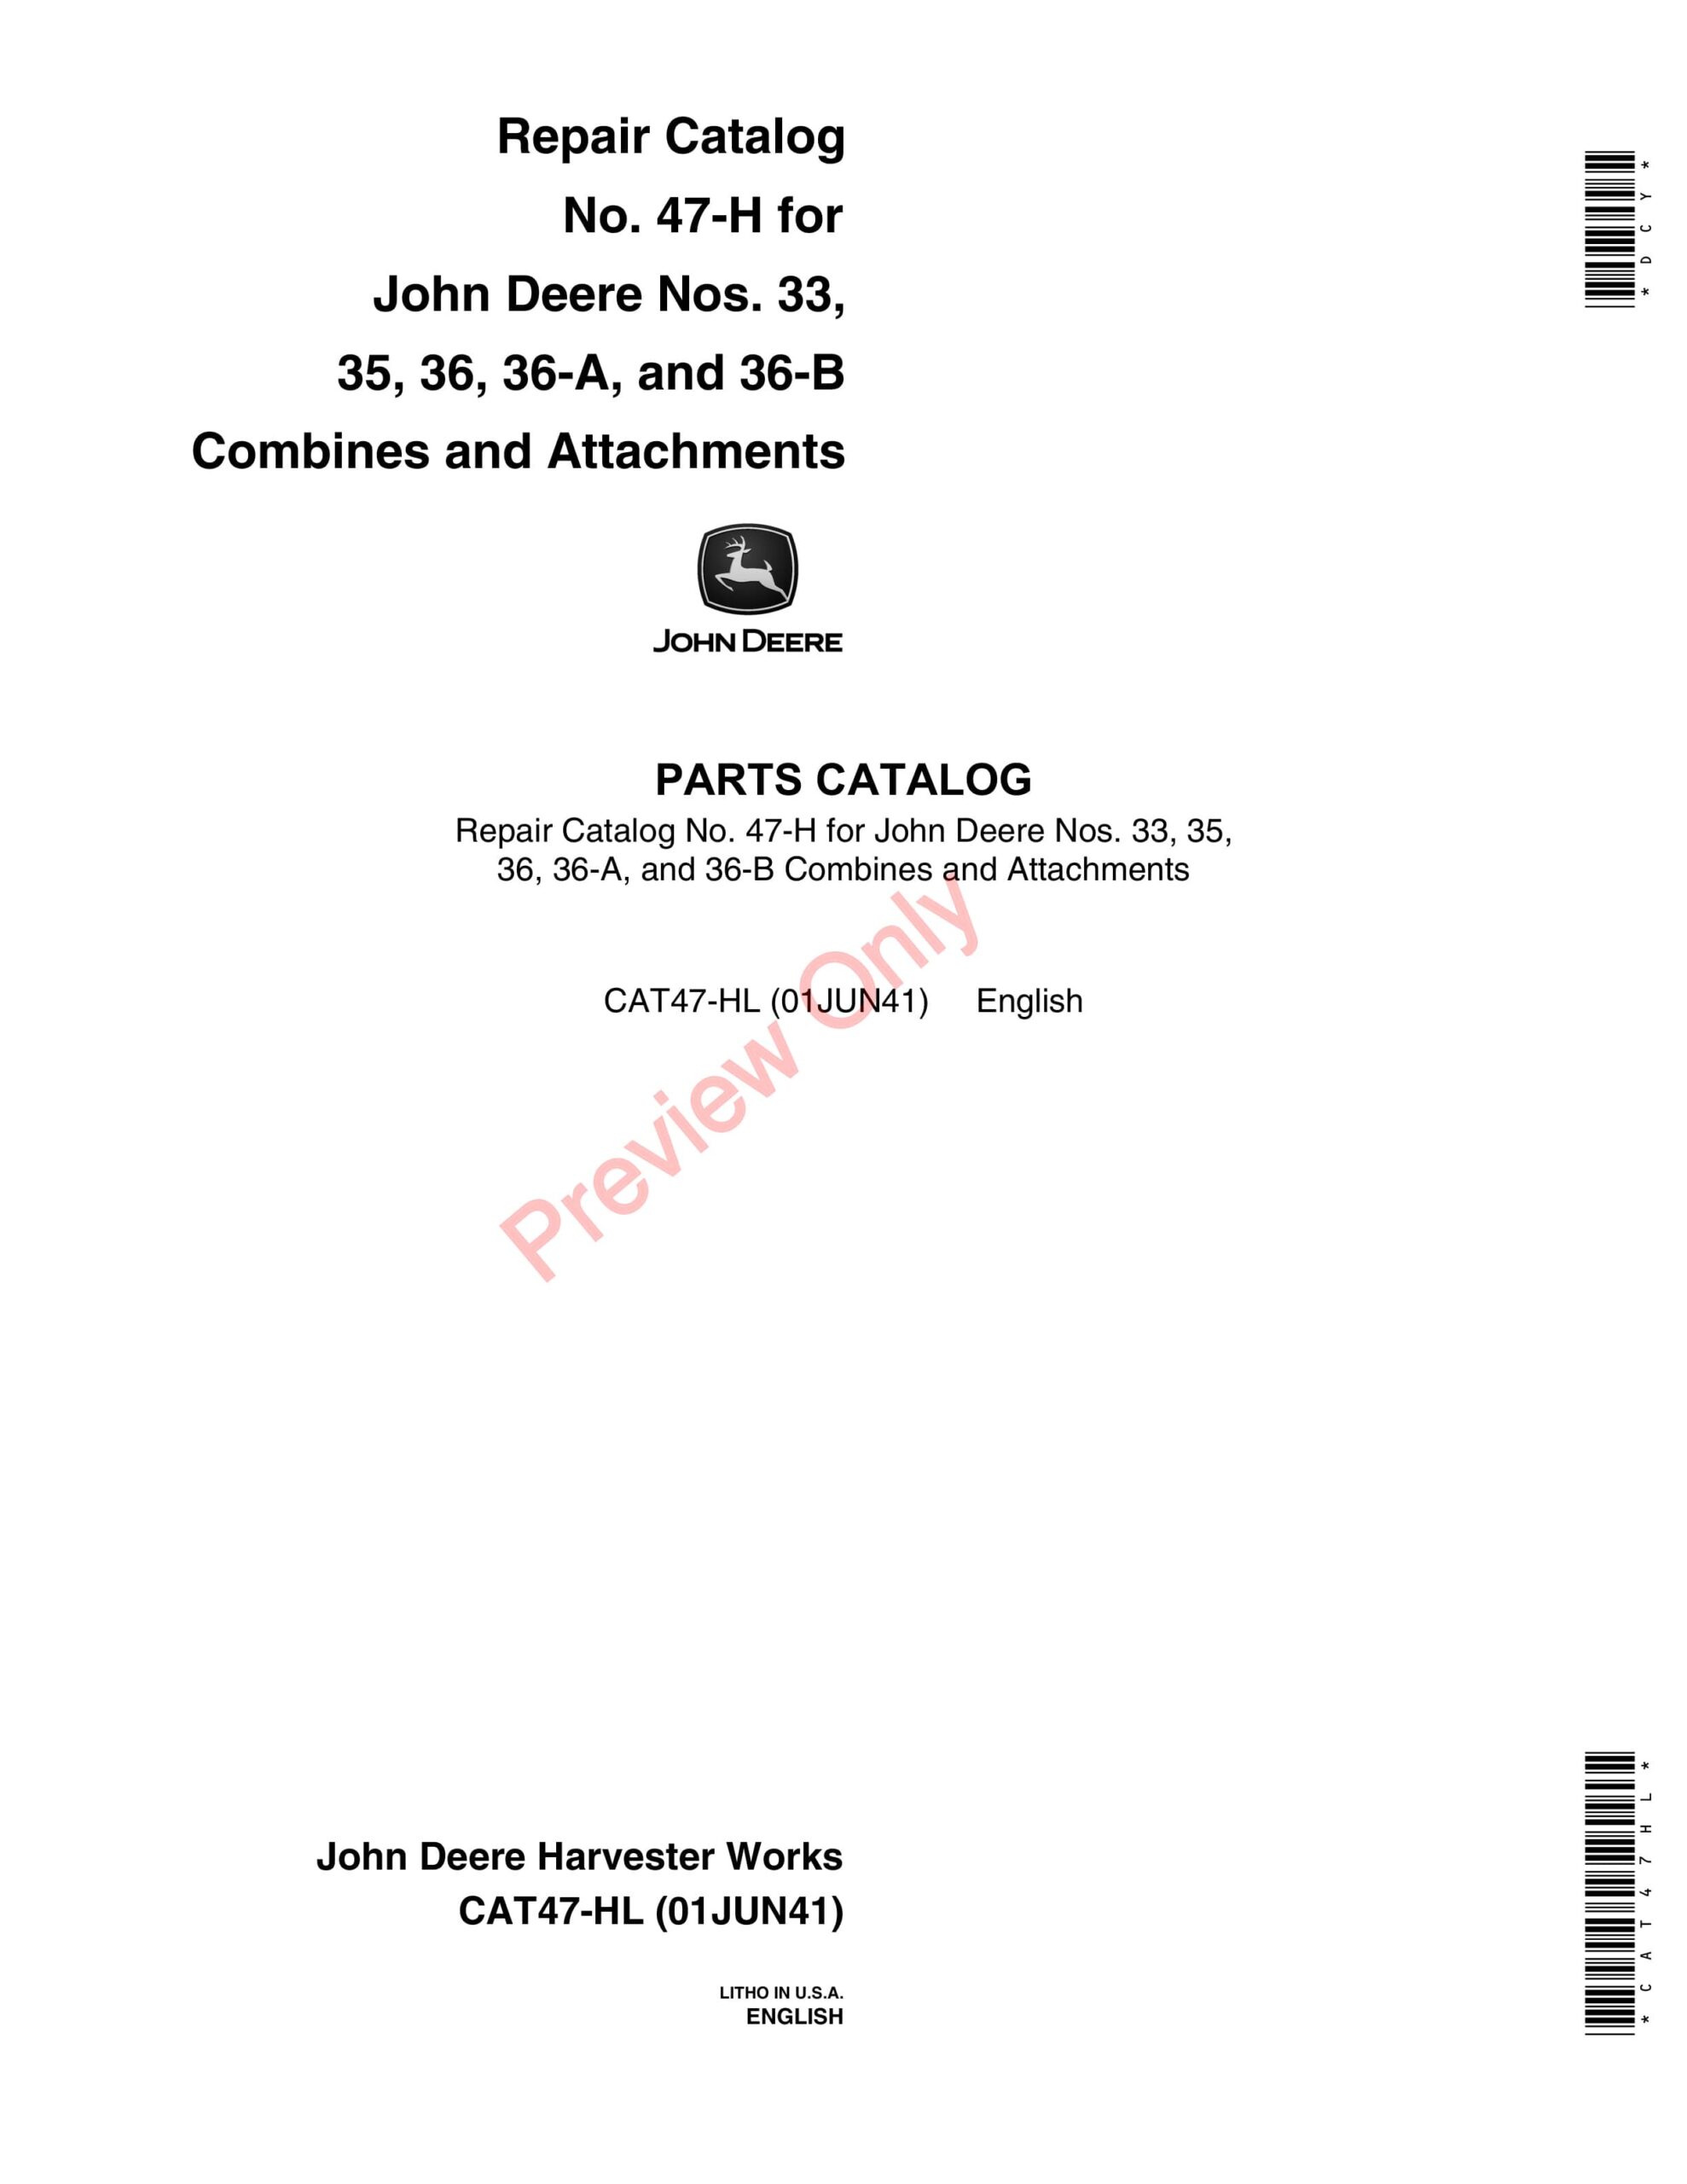 John Deere 33, 35, 36, 36-A, 36-B Combines, Attachments Parts Catalog CAT47HL 01JUN41-1